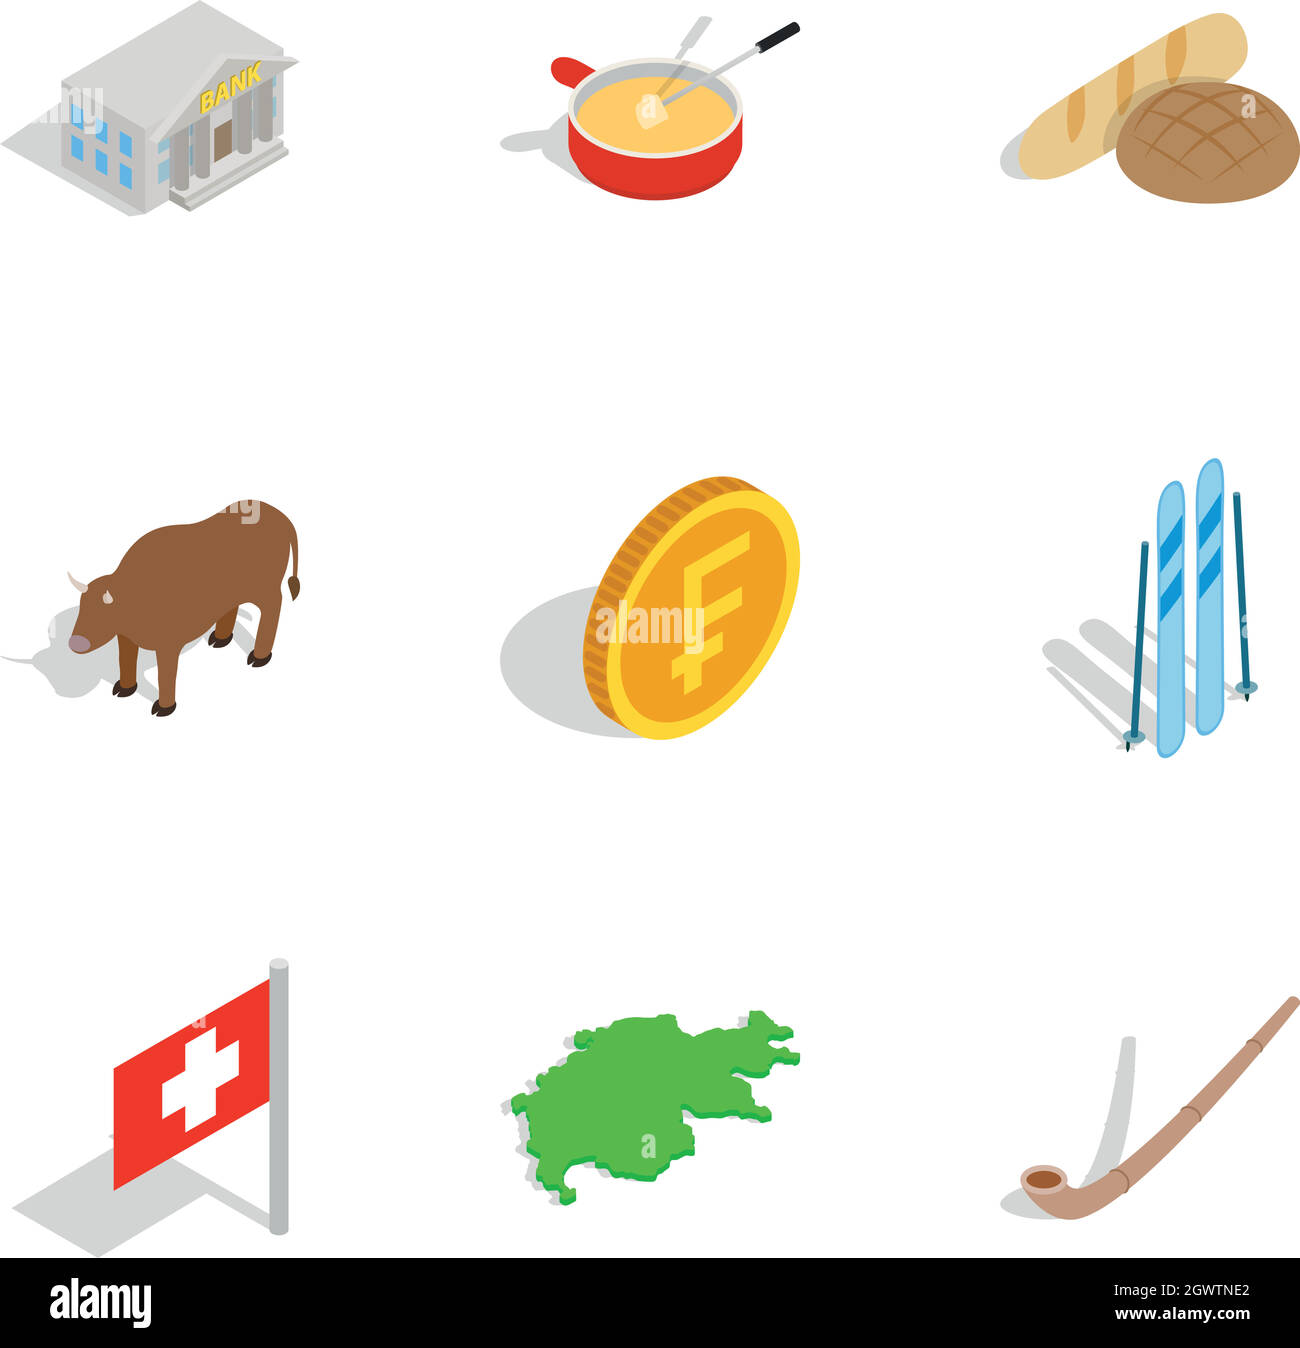 Switzerland icons set, isometric 3d style Stock Vector